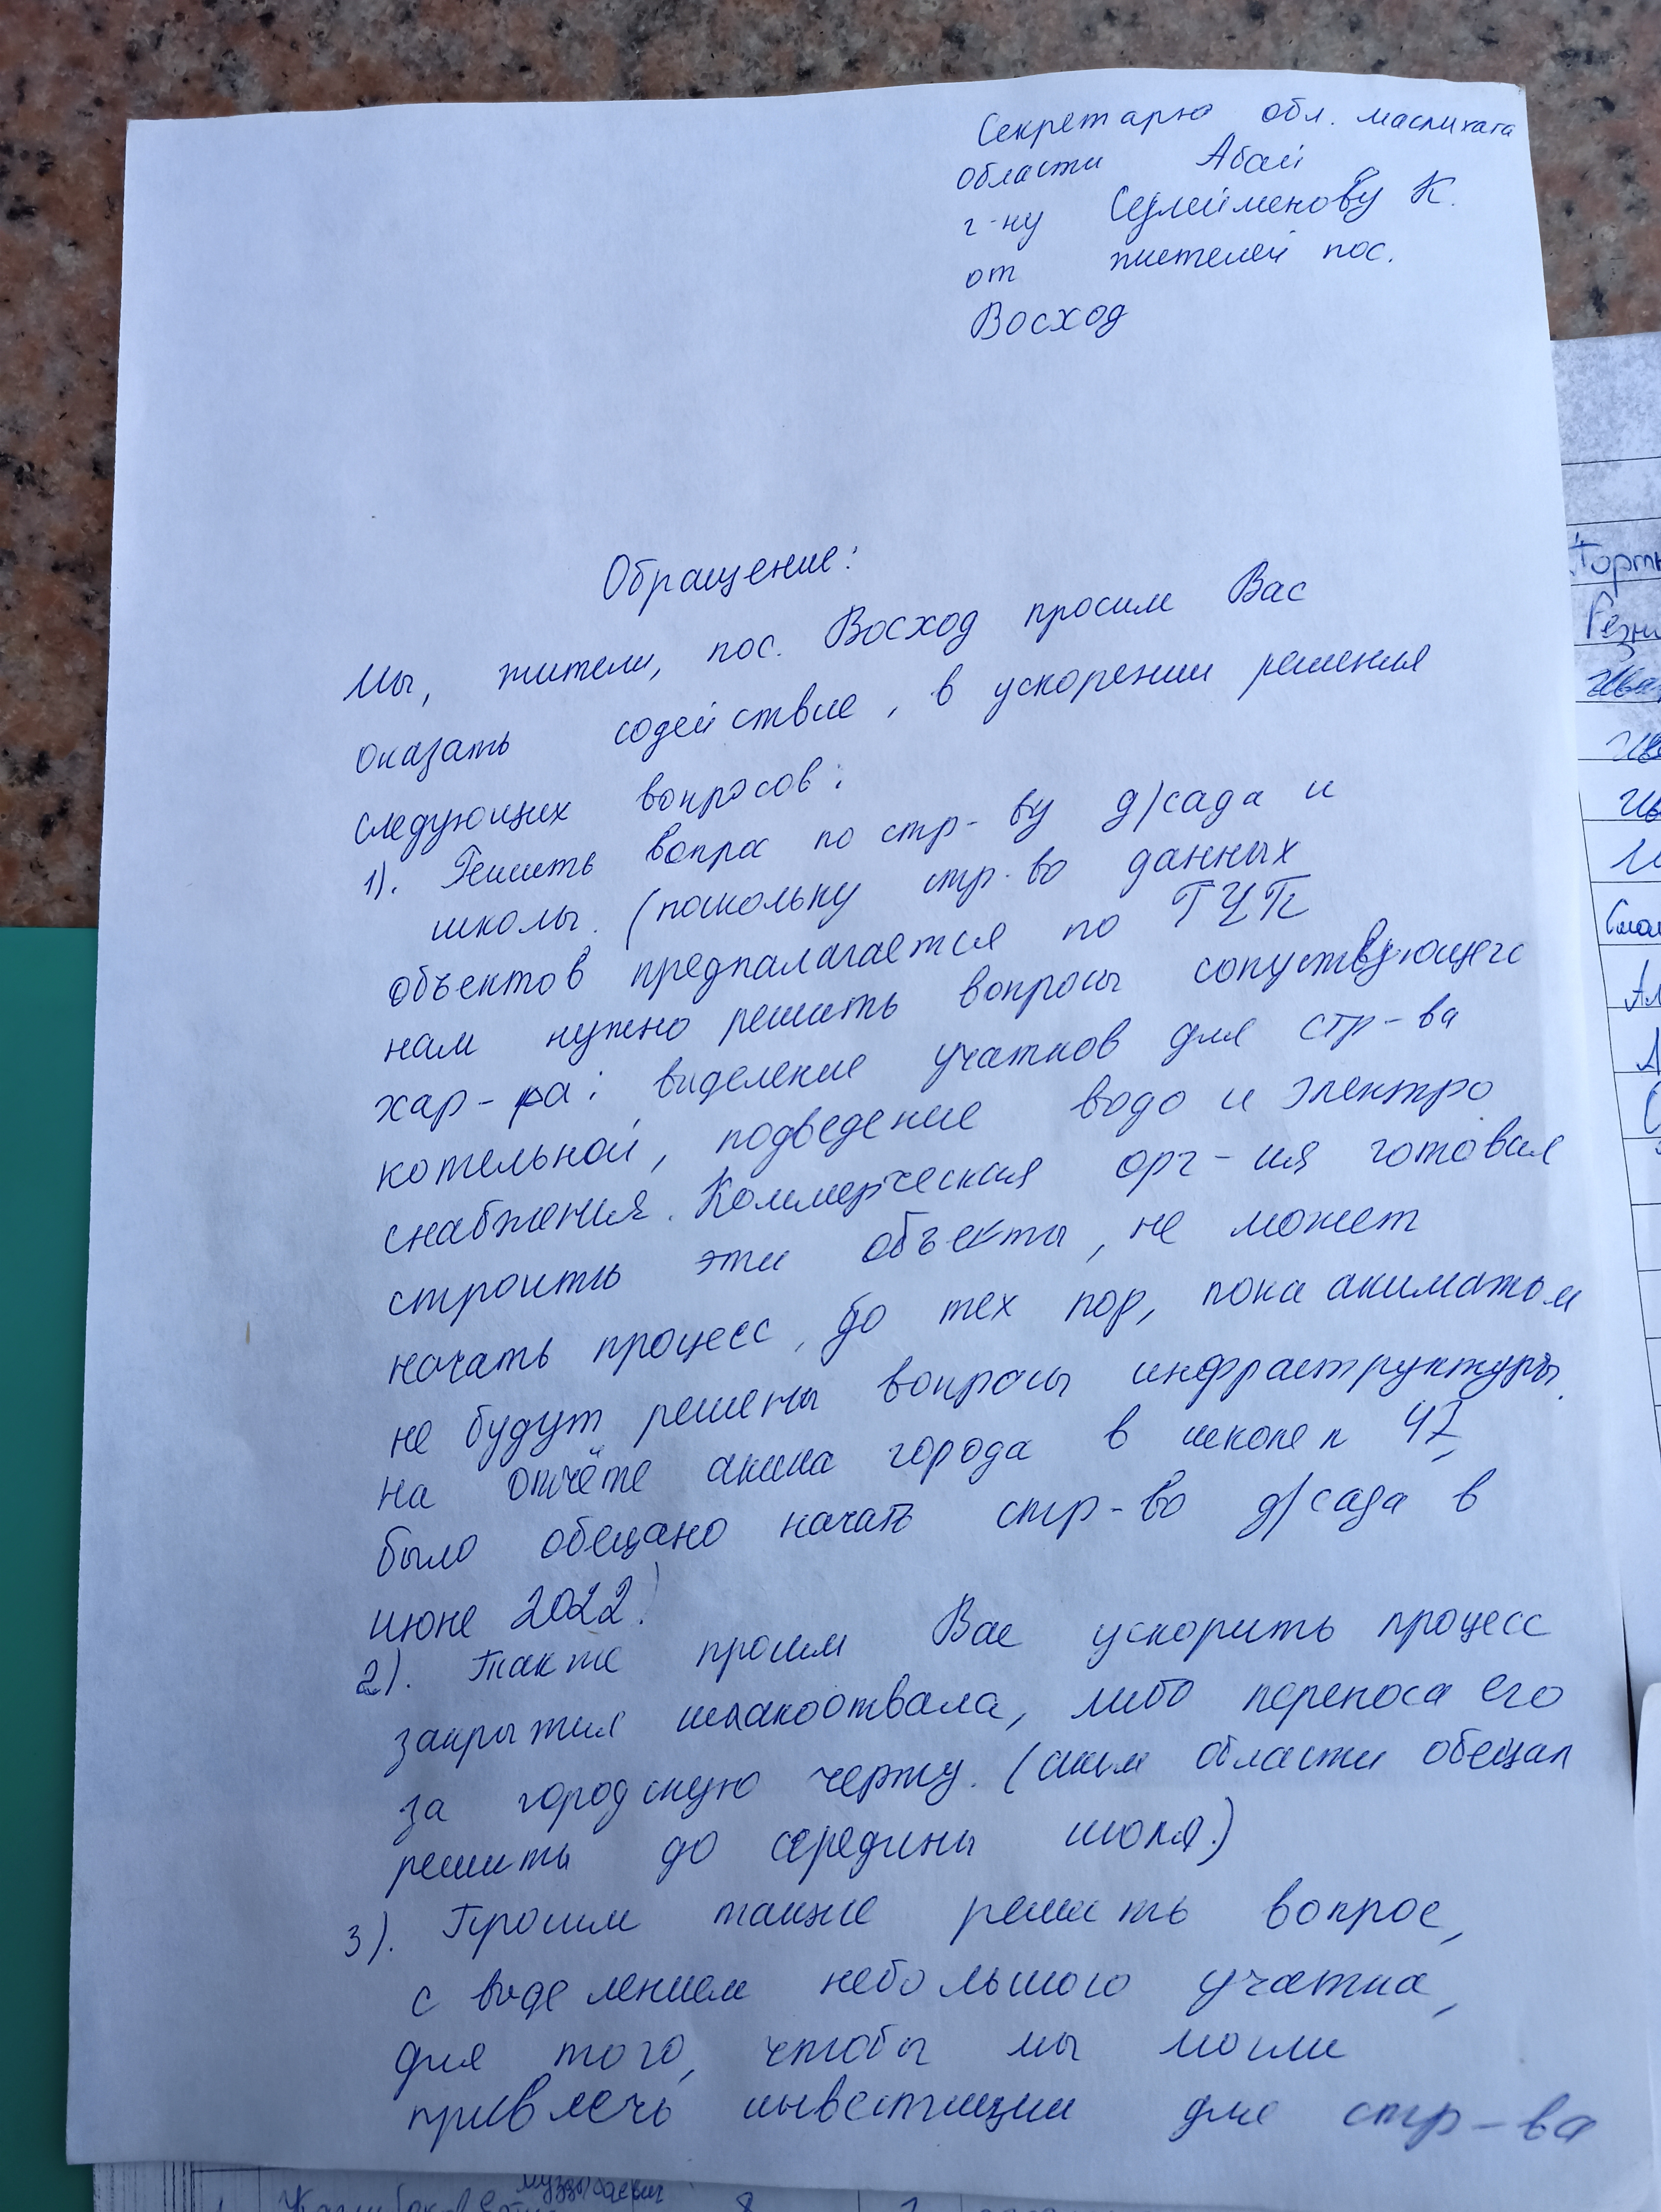 Обращение жителей поселка Восход передано в областной акимат